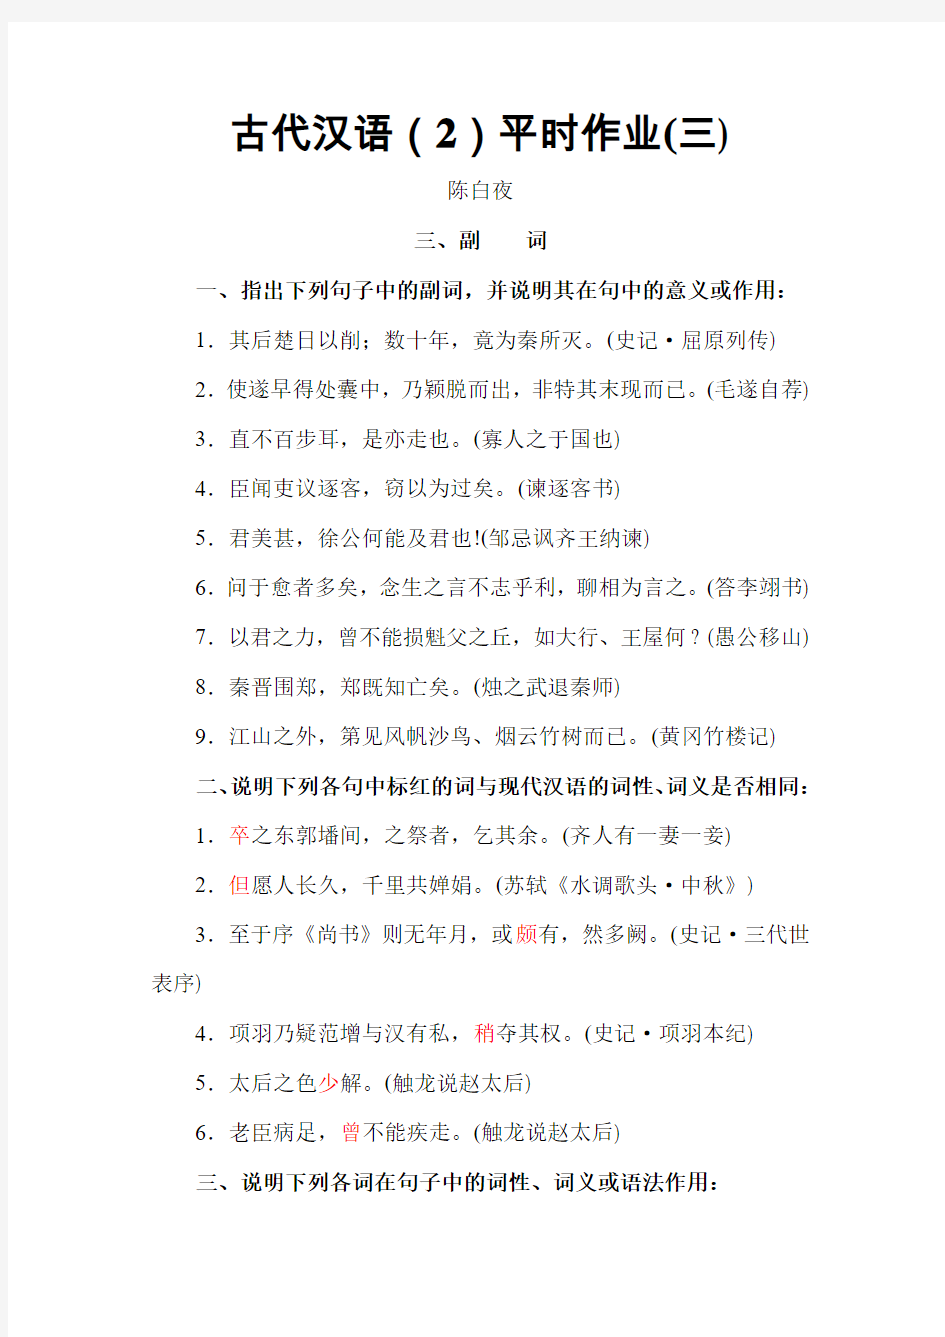 古代汉语(2)平时作业(三)